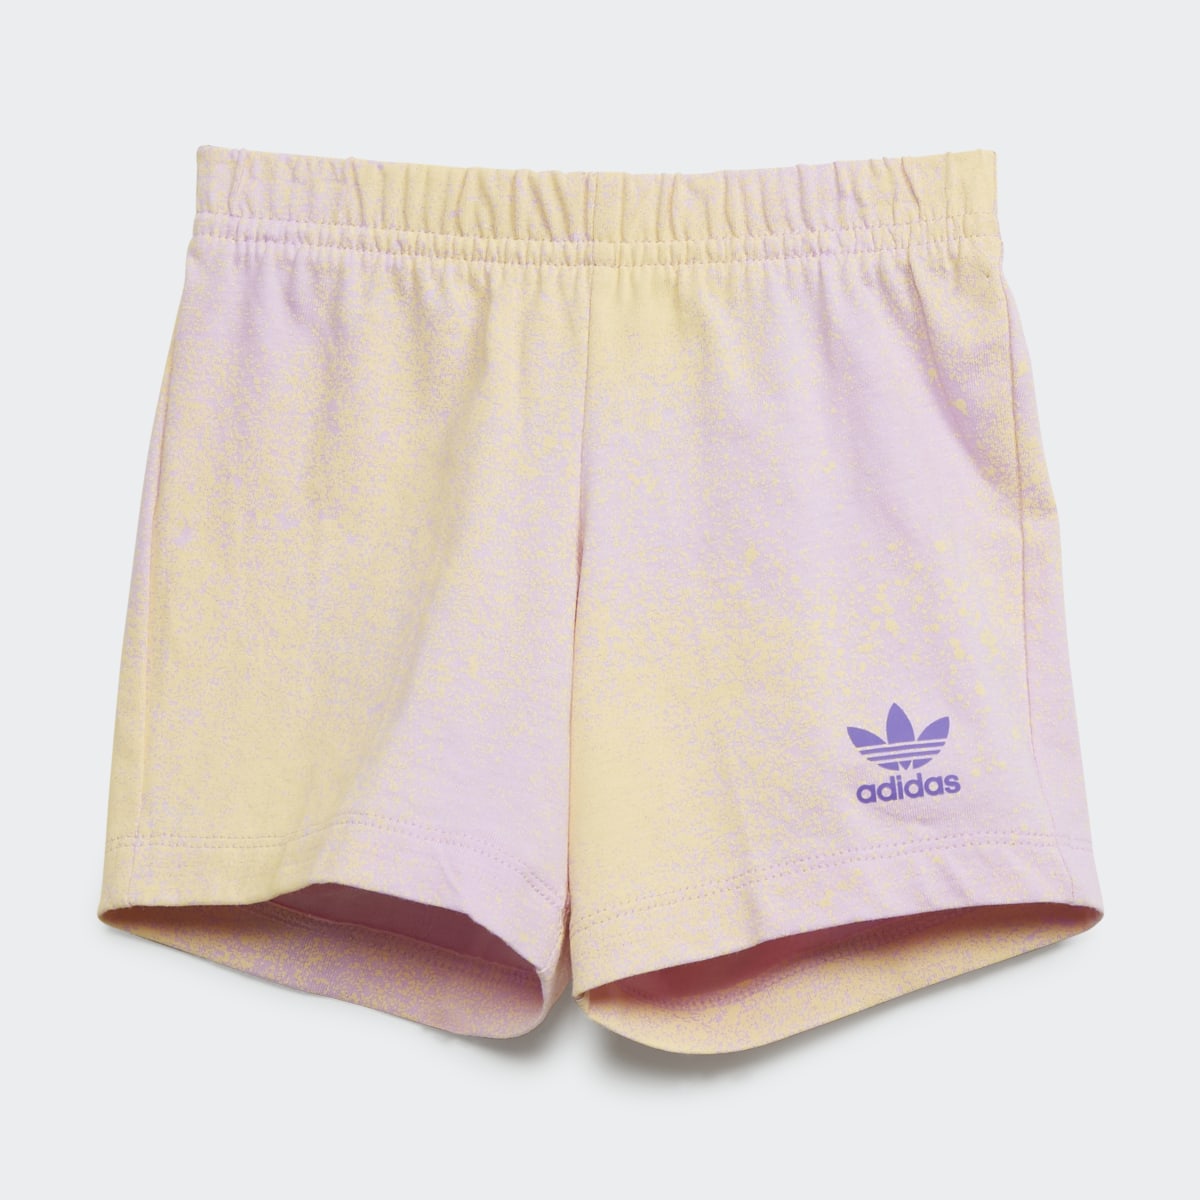 Adidas Graphic Logo Shorts and Tee Set. 5